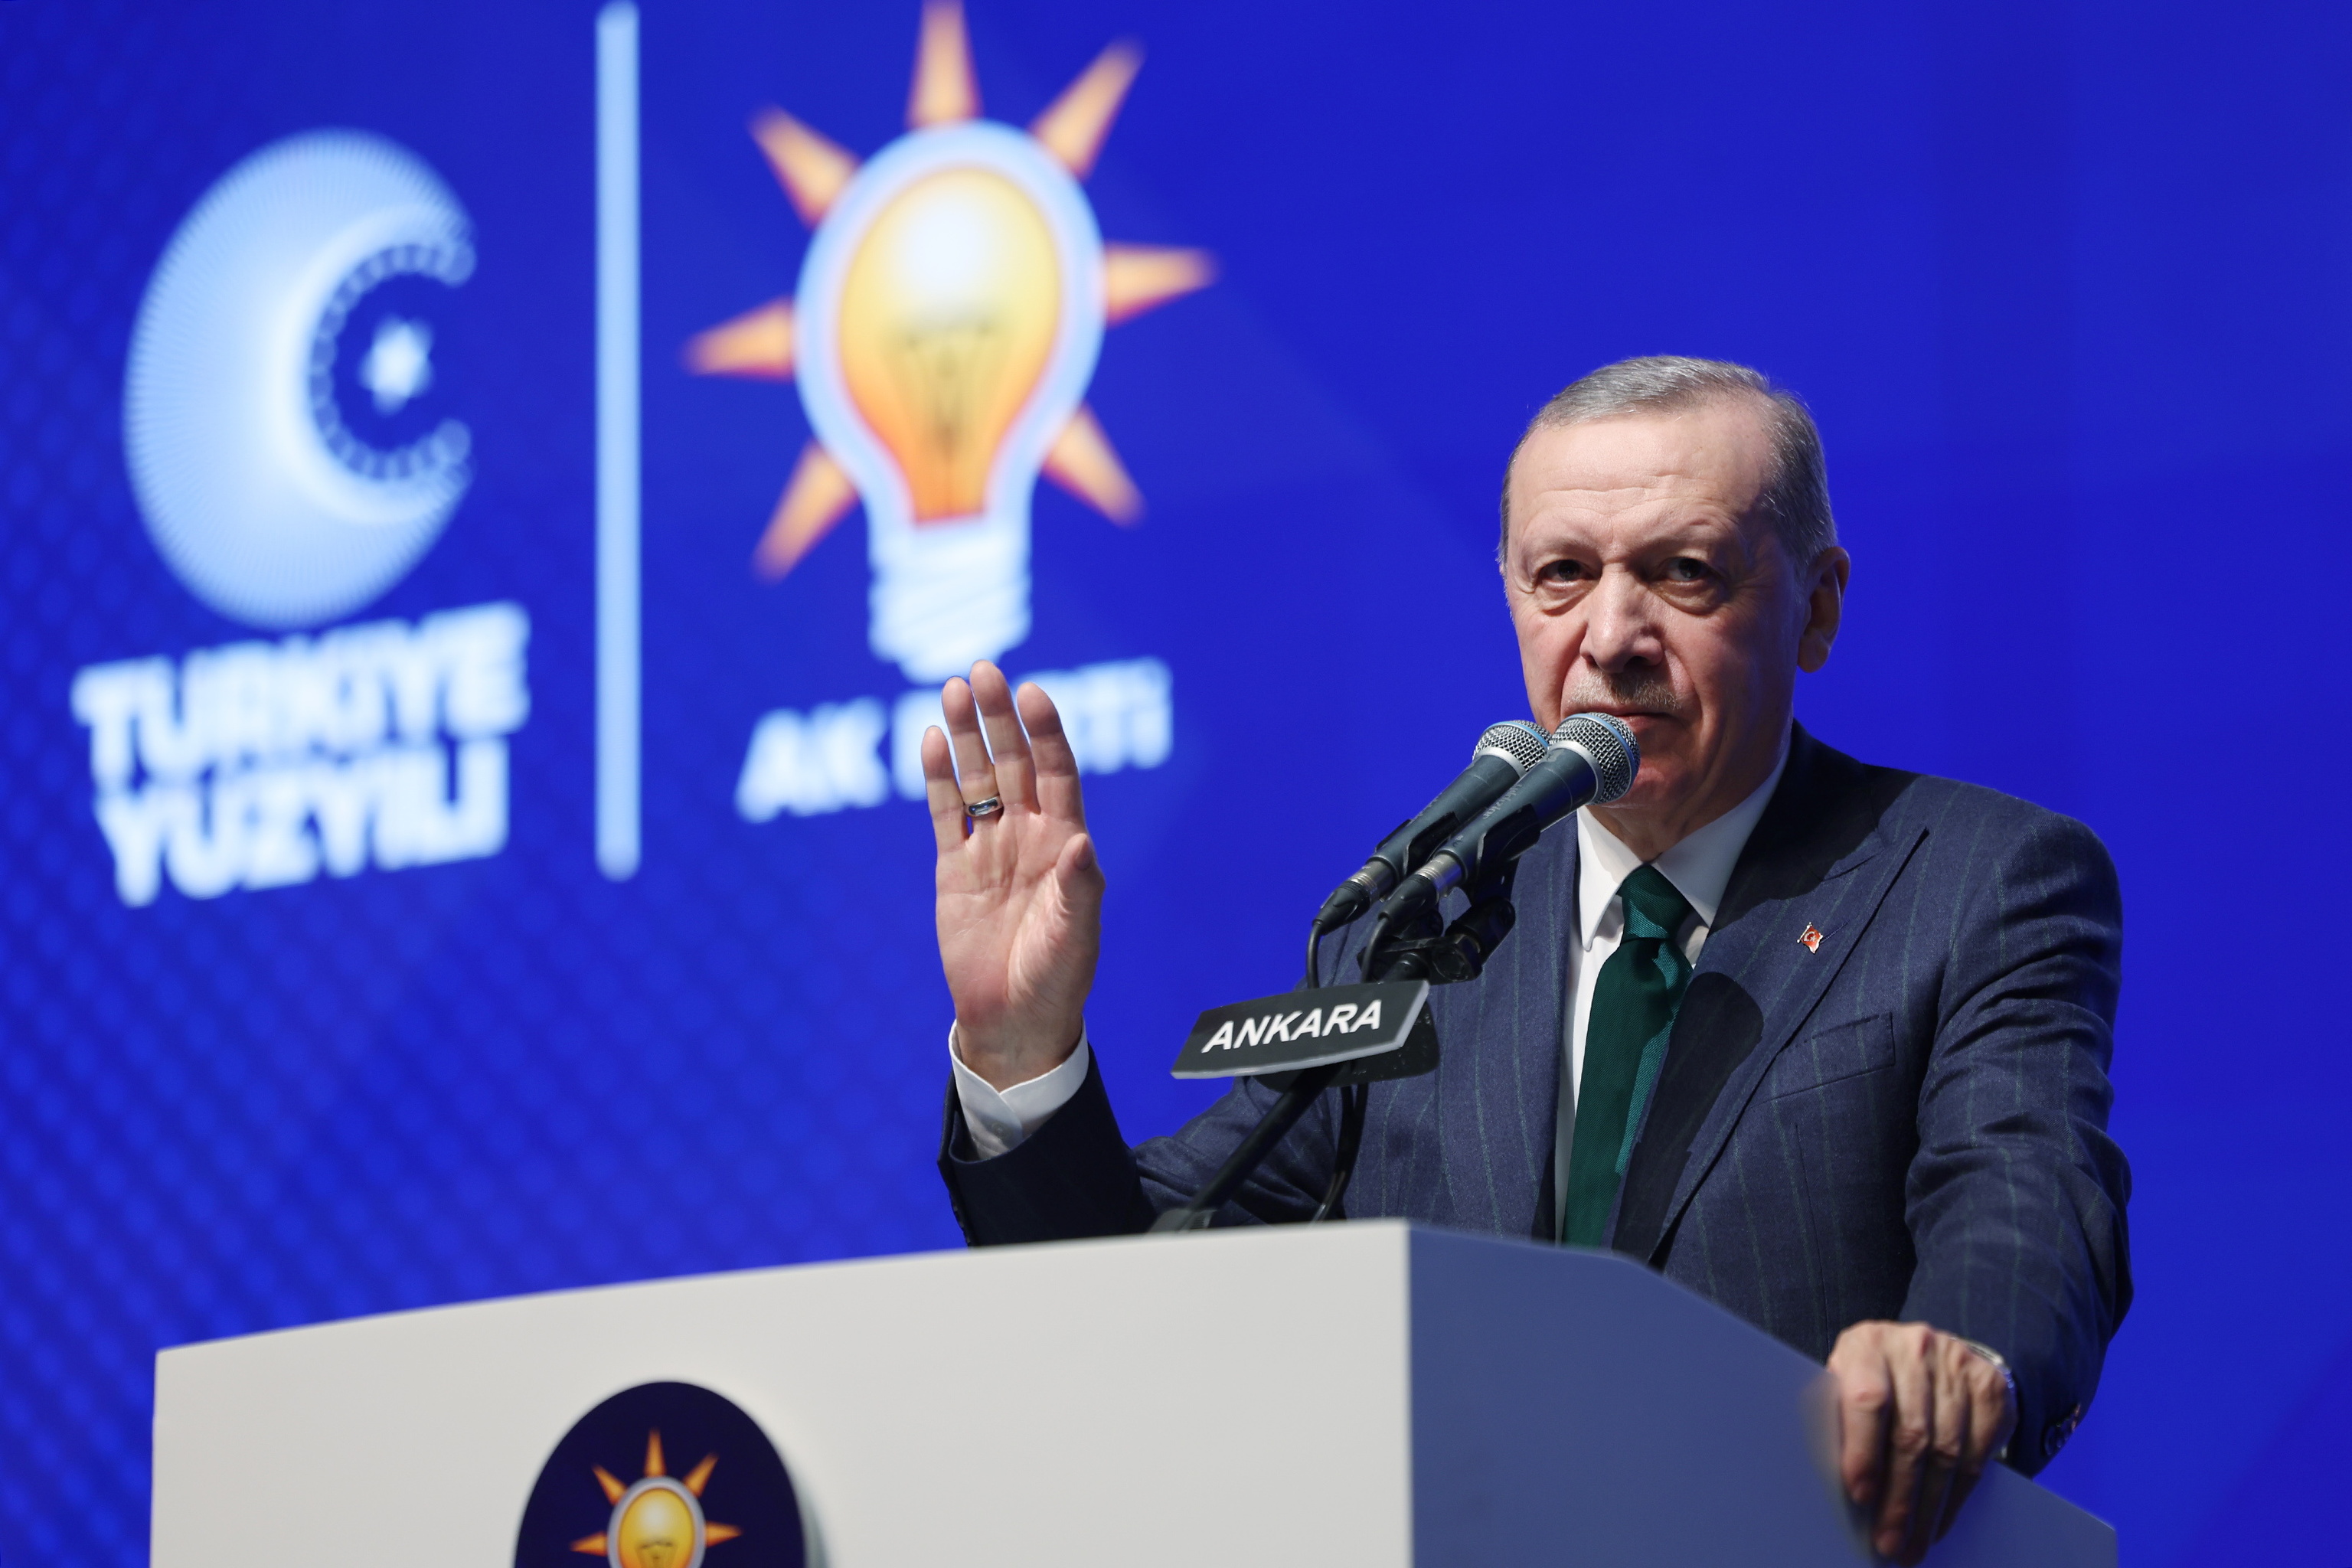 El presidente turco, Recep Tayyip Erdogan, en una imagen reciente.